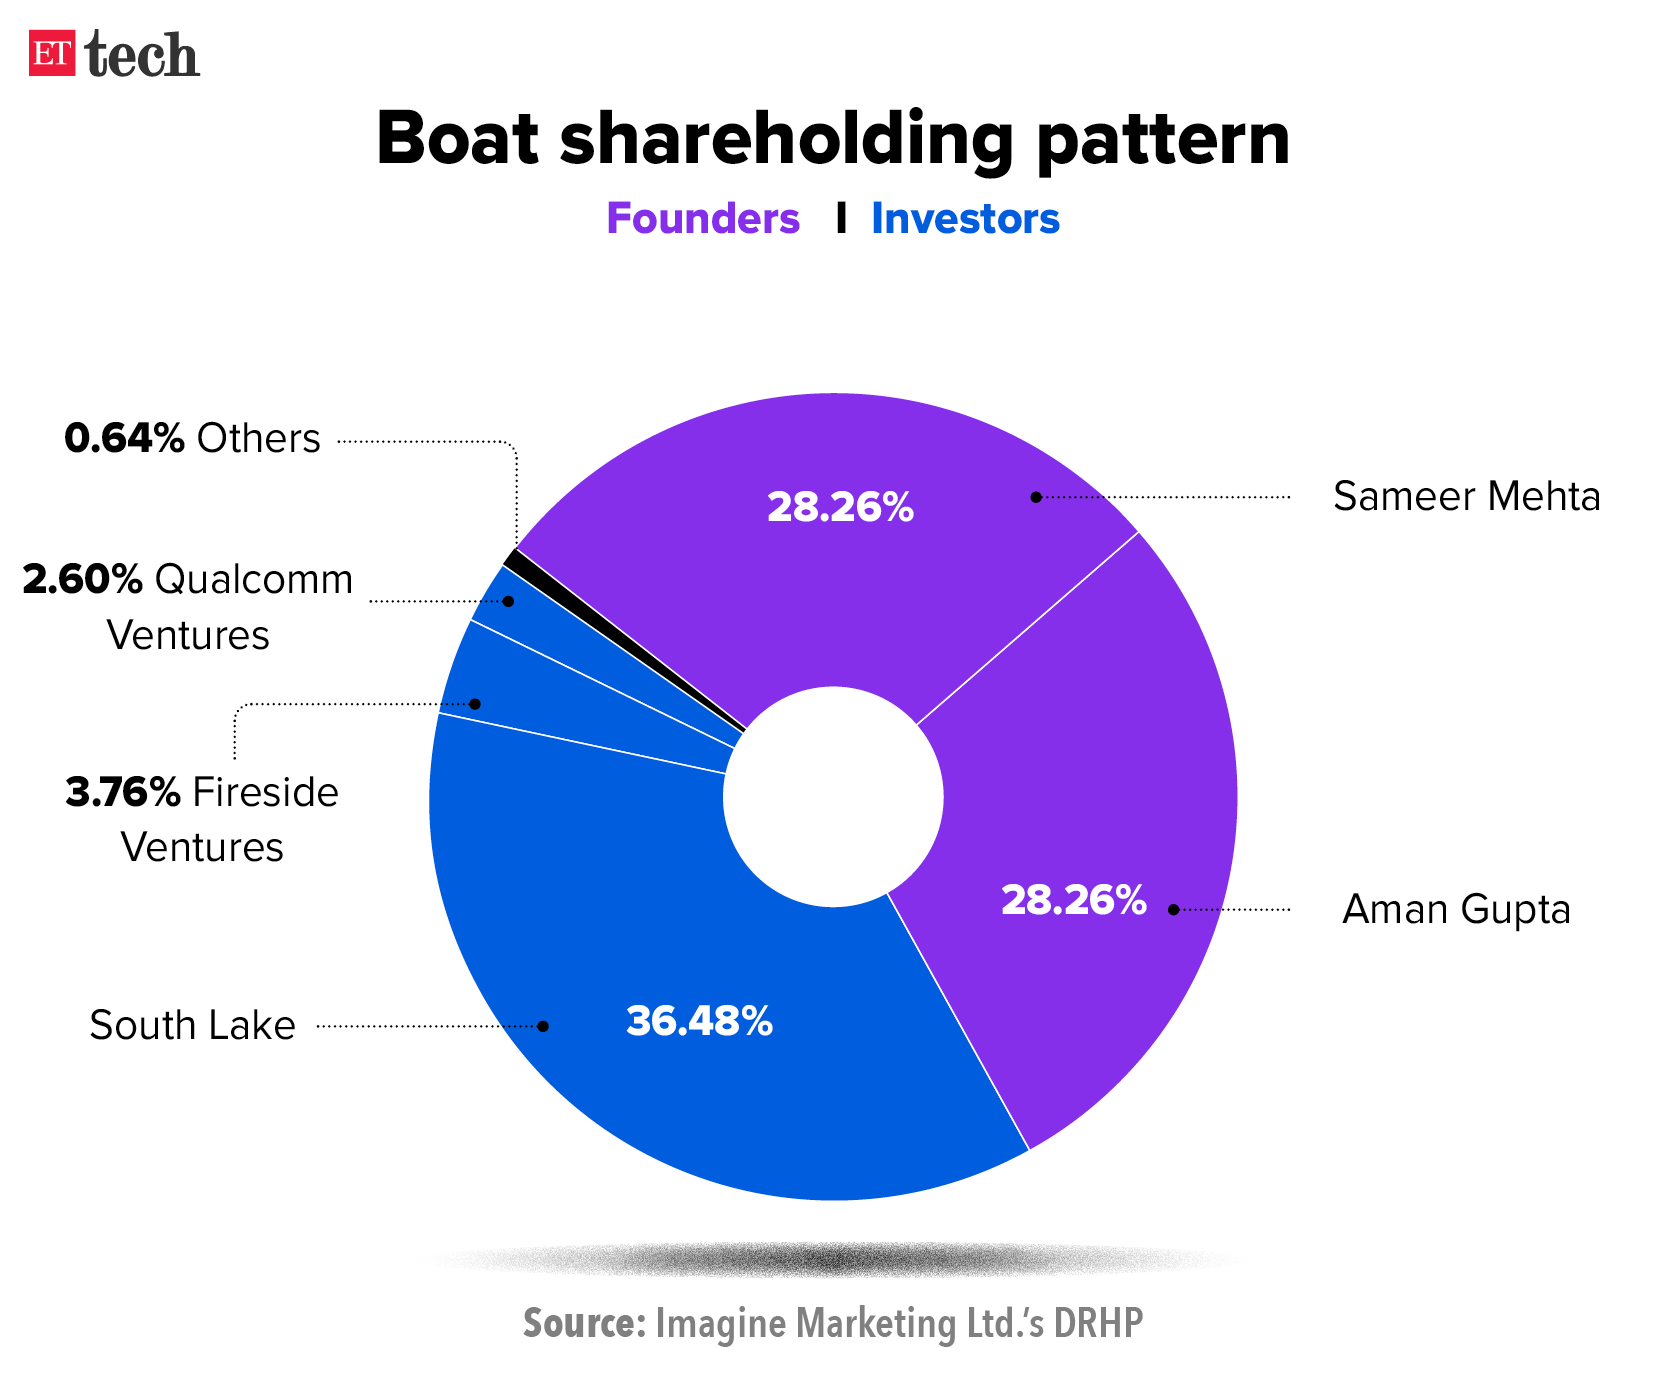 Shareholders of Boat